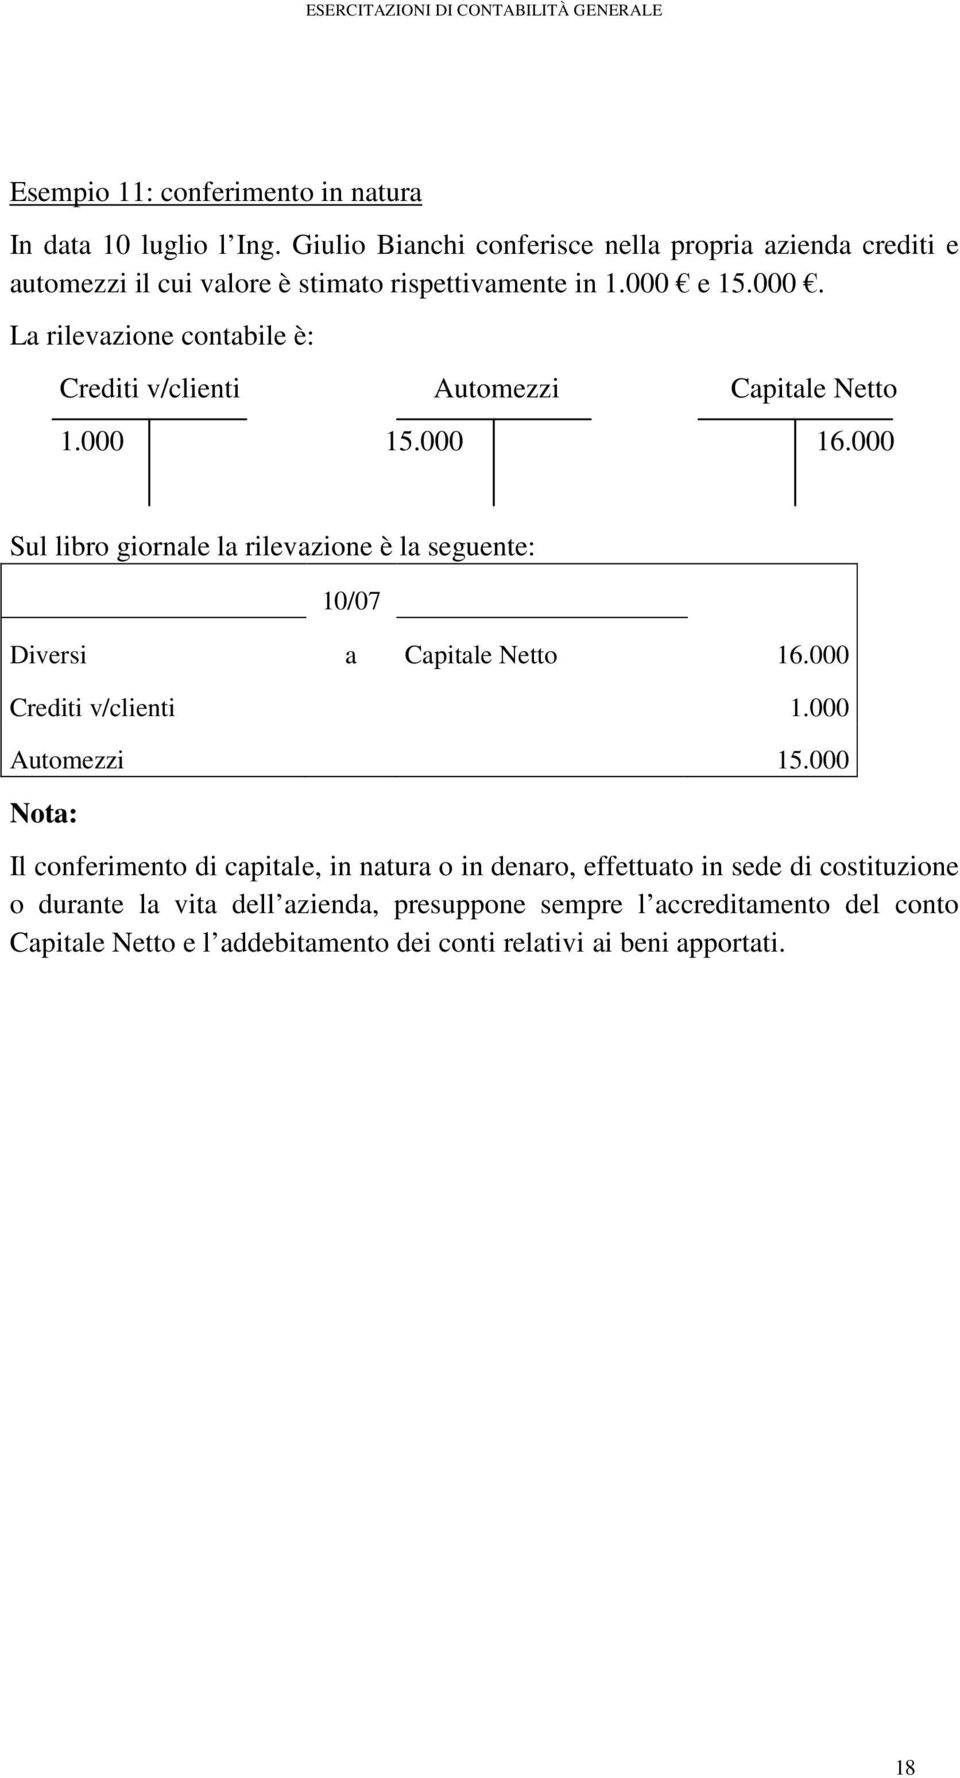 e 15.000. Crediti v/clienti Automezzi Capitale Netto 1.000 15.000 16.000 Nota: 10/07 Diversi a Capitale Netto 16.000 Crediti v/clienti 1.